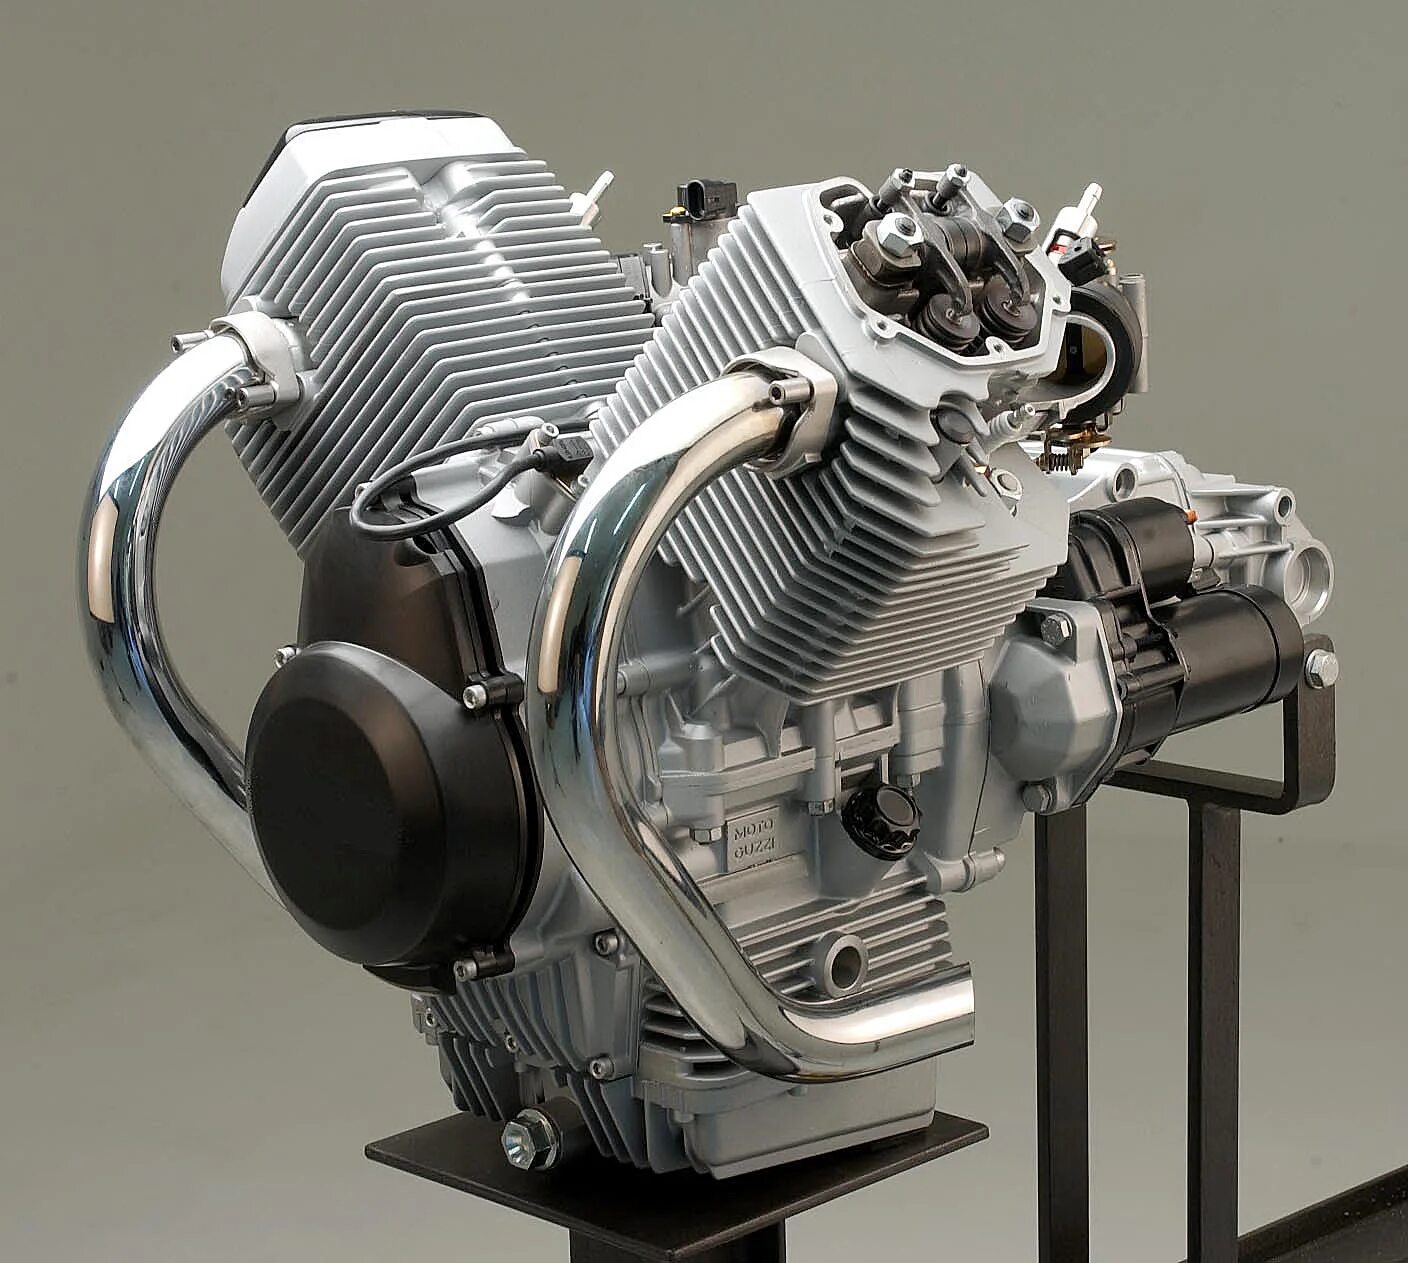 Купить мотор на мотоцикл. Moto Guzzi 750 двигатель. Генератор Moto Guzzi Breva 750. Moto Guzzi двигатель. Двигатель мотоцикла Honda nf750.